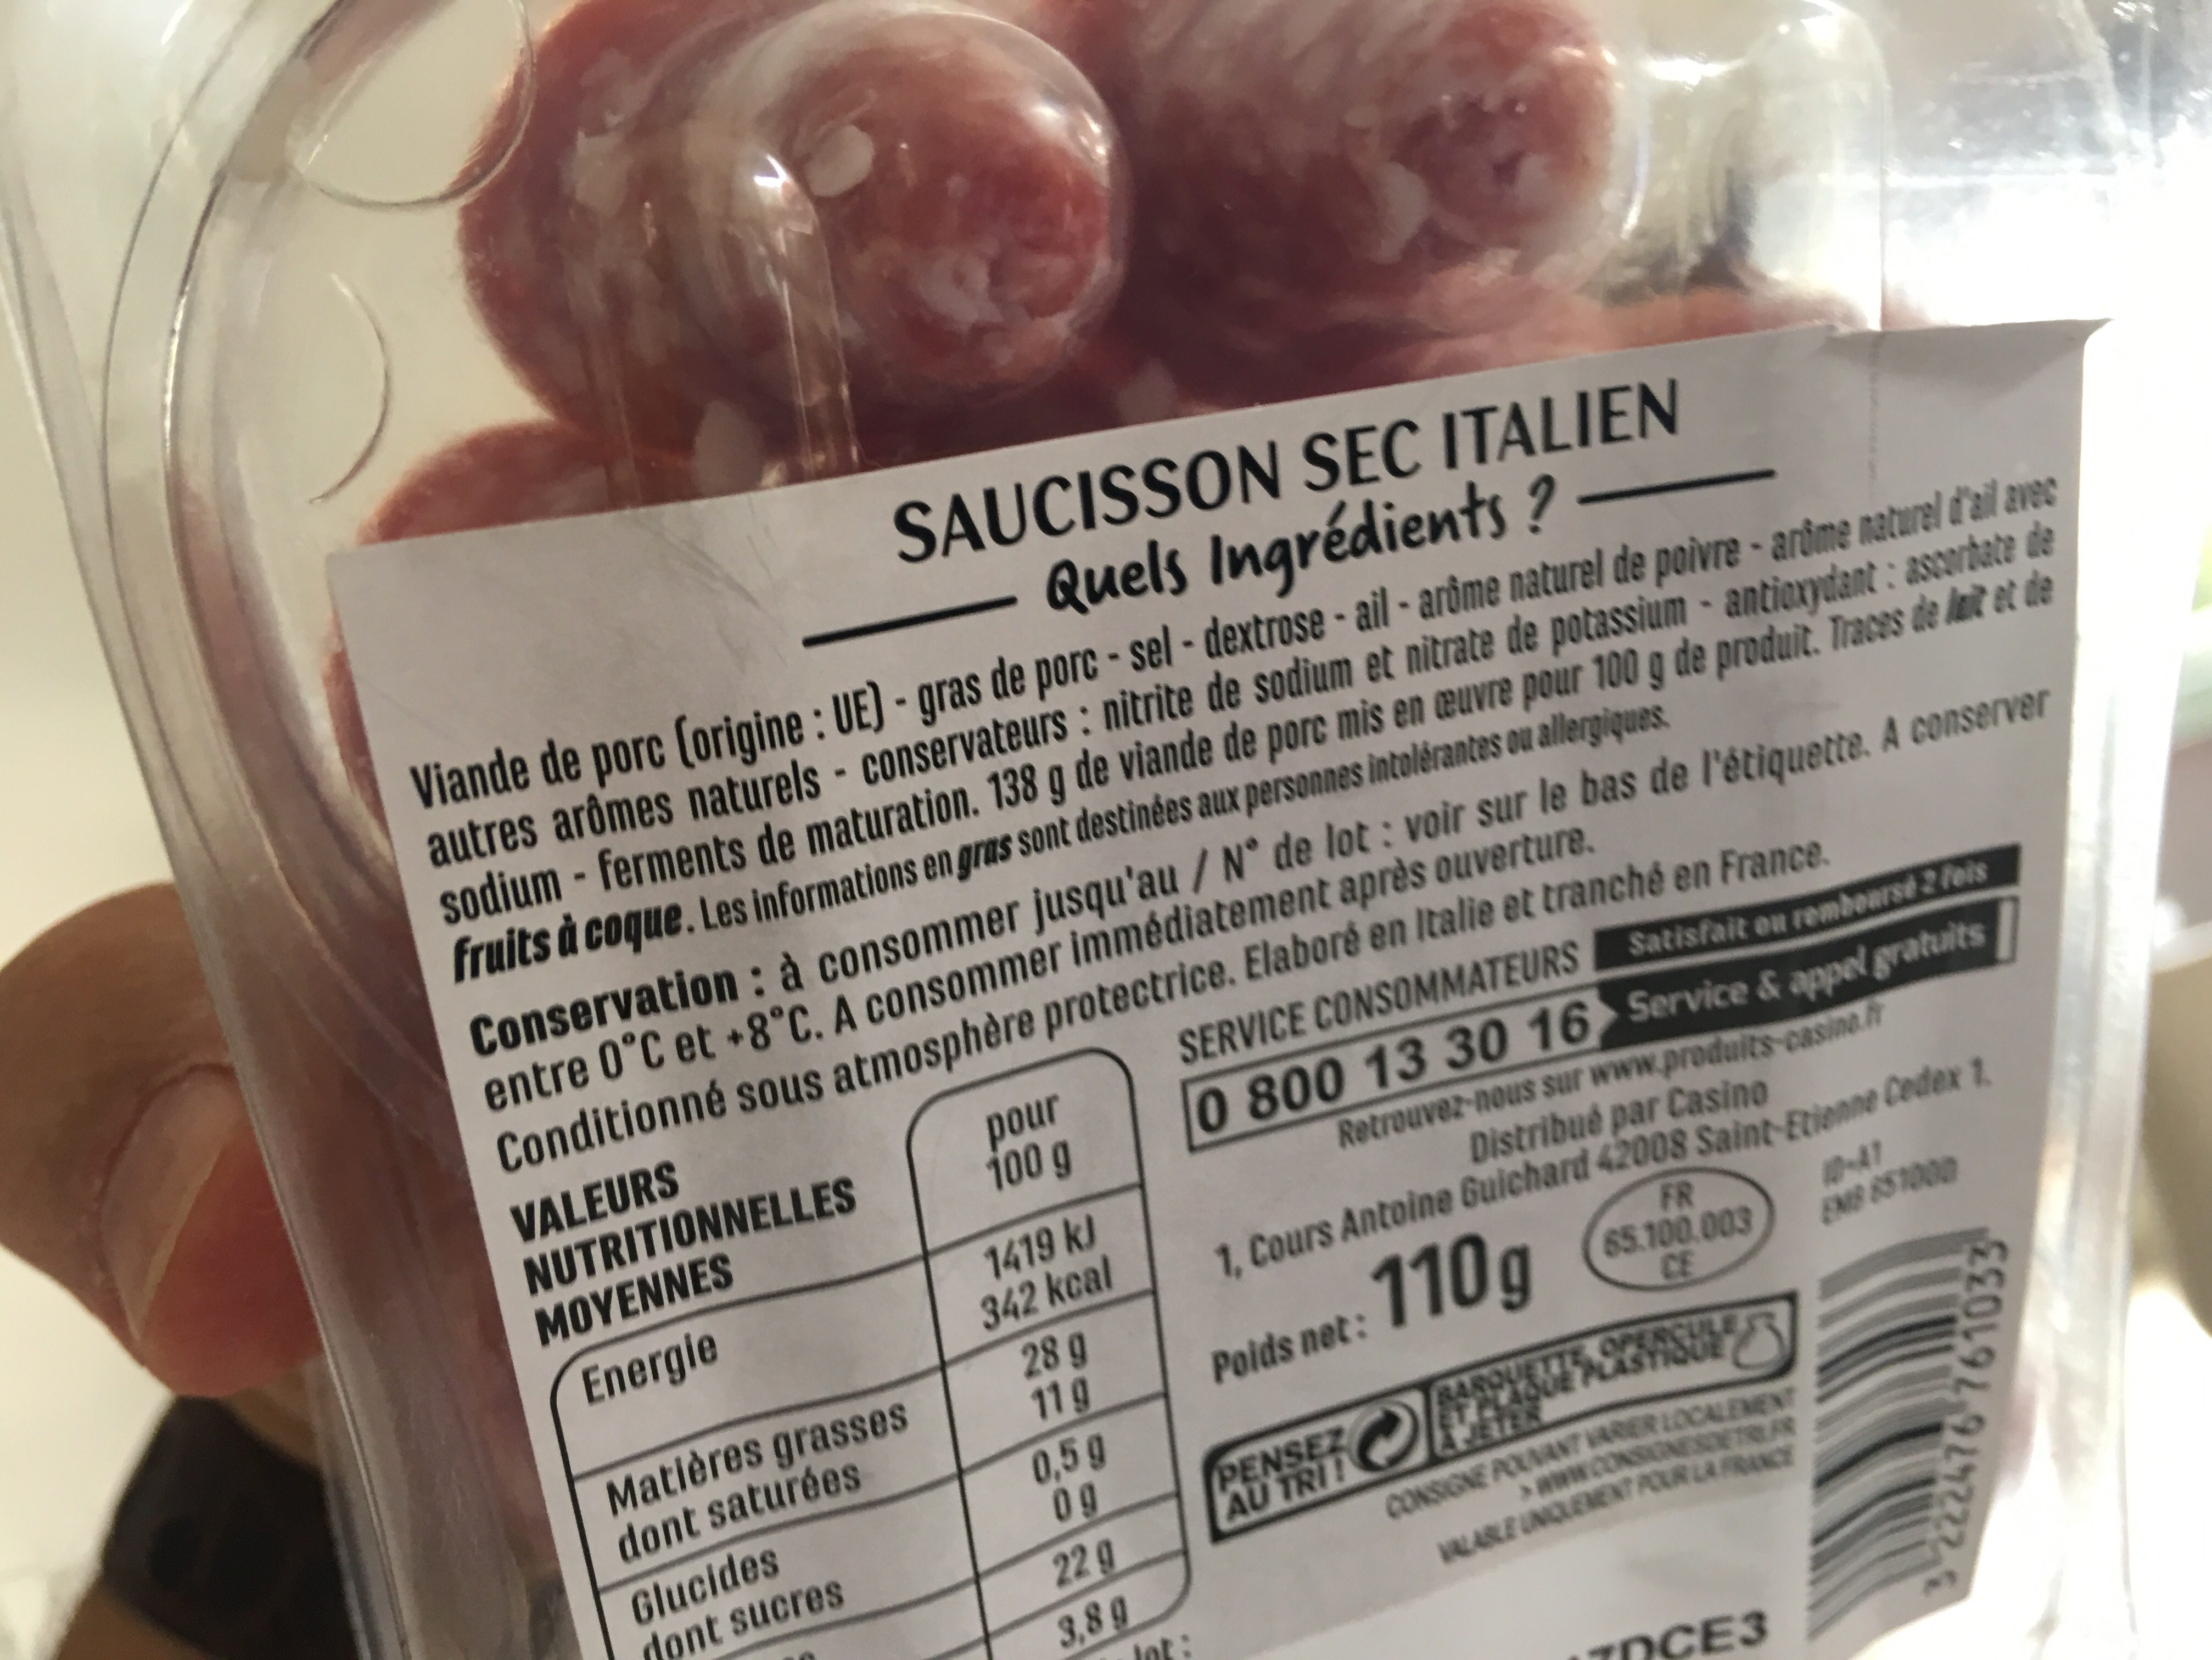 Rosaces de saucisson sec italien - Ingredients - fr